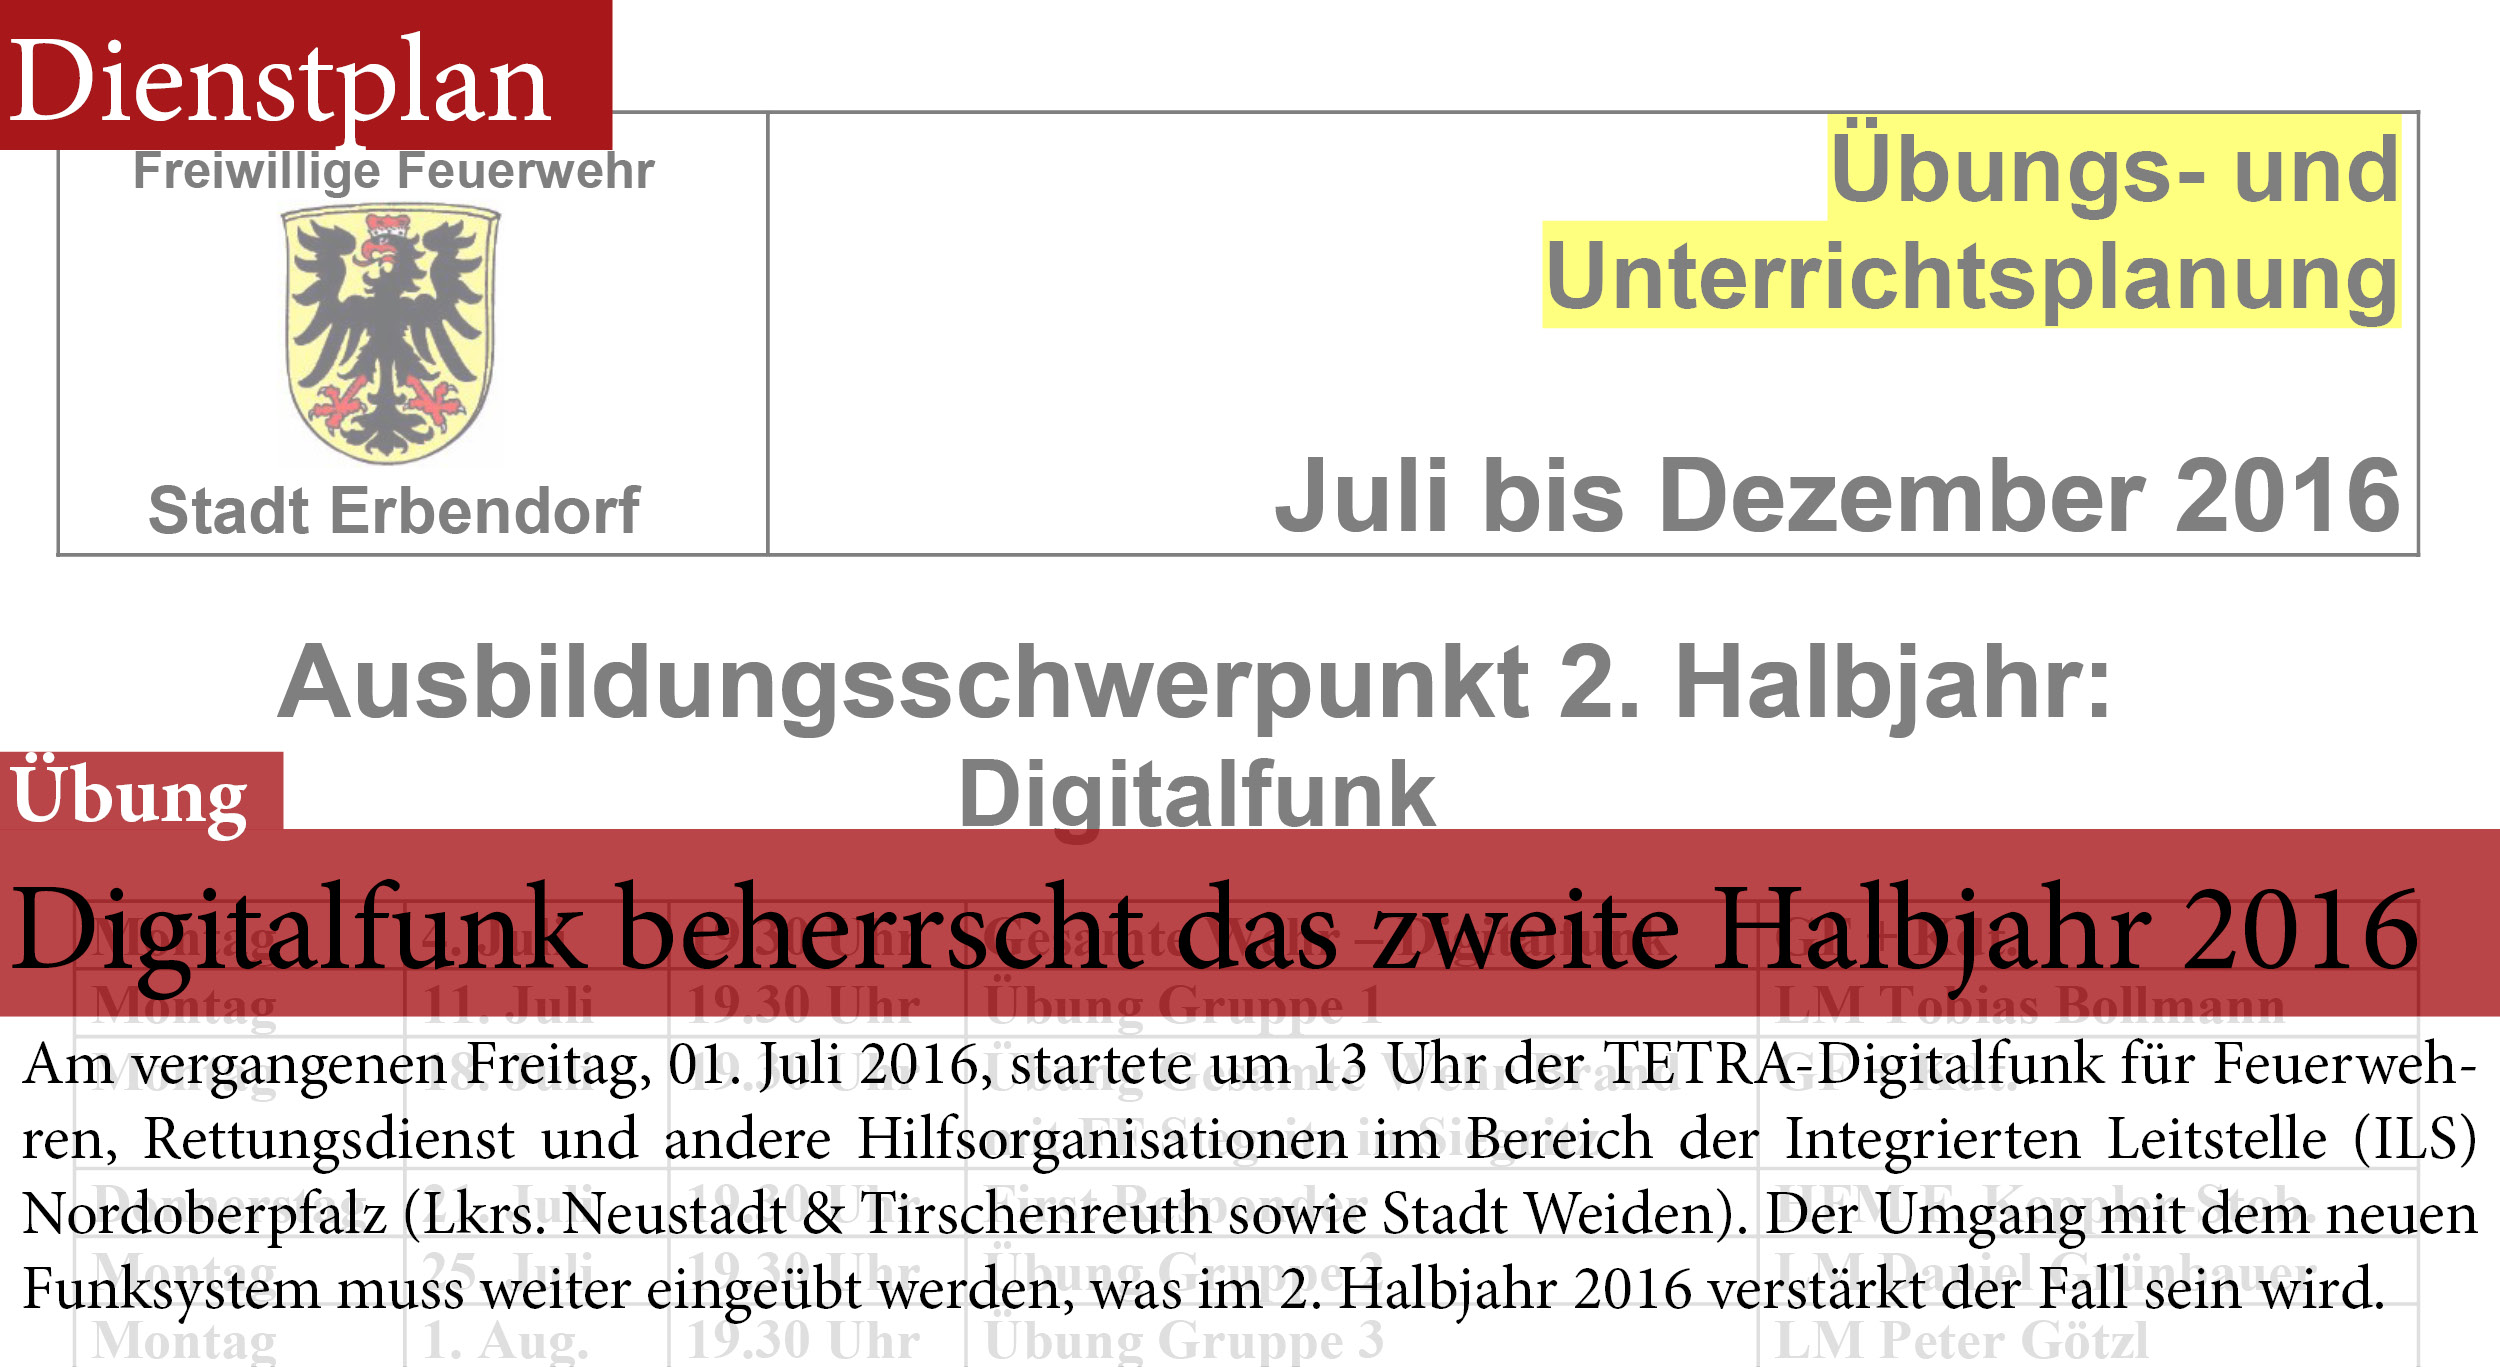 Dienstplan FFW Erbendorf Übung 2016 2. Halbjahr